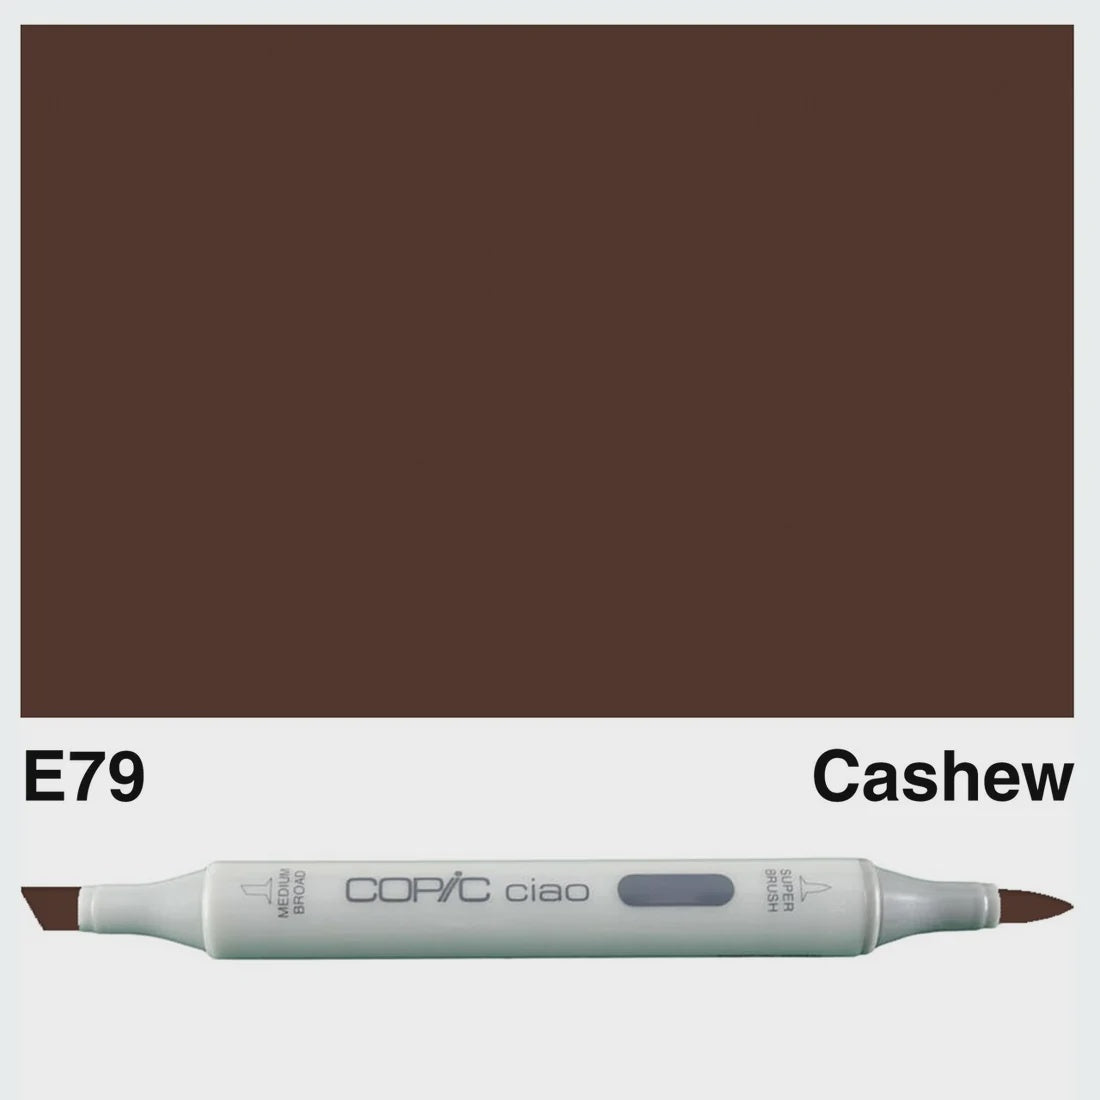 CIAO E79 CASHEW